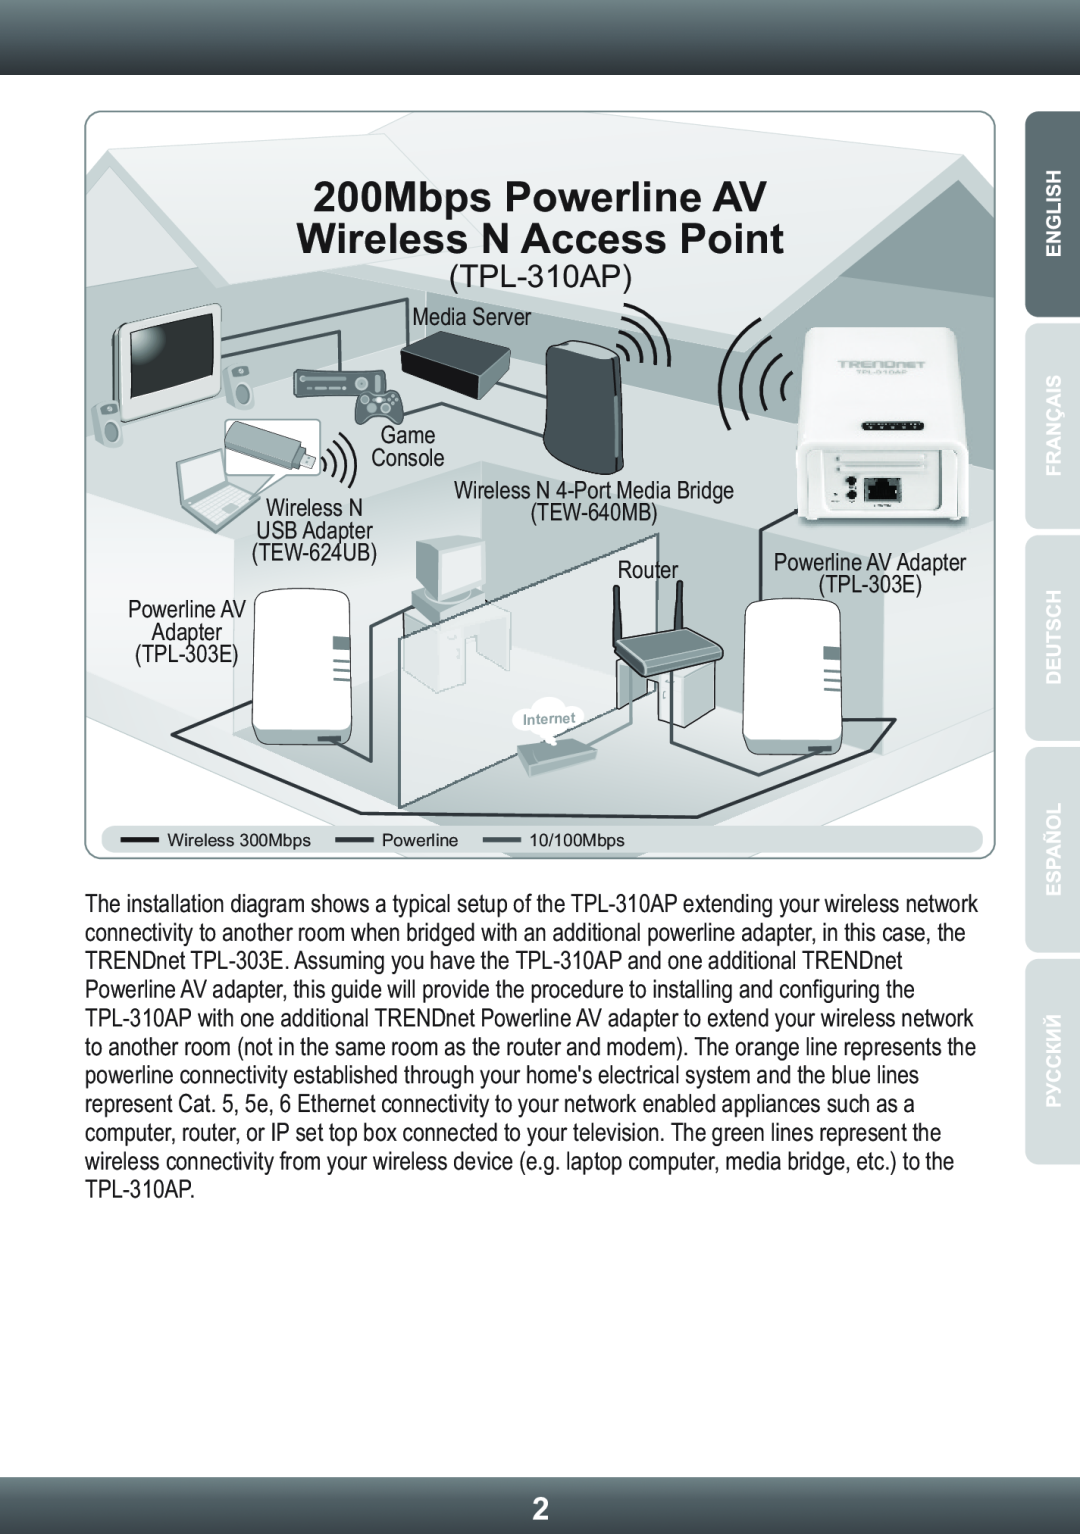 TRENDnet TRENDNET manual 200Mbps Powerline AV Wireless N Access Point, TPL-310AP 